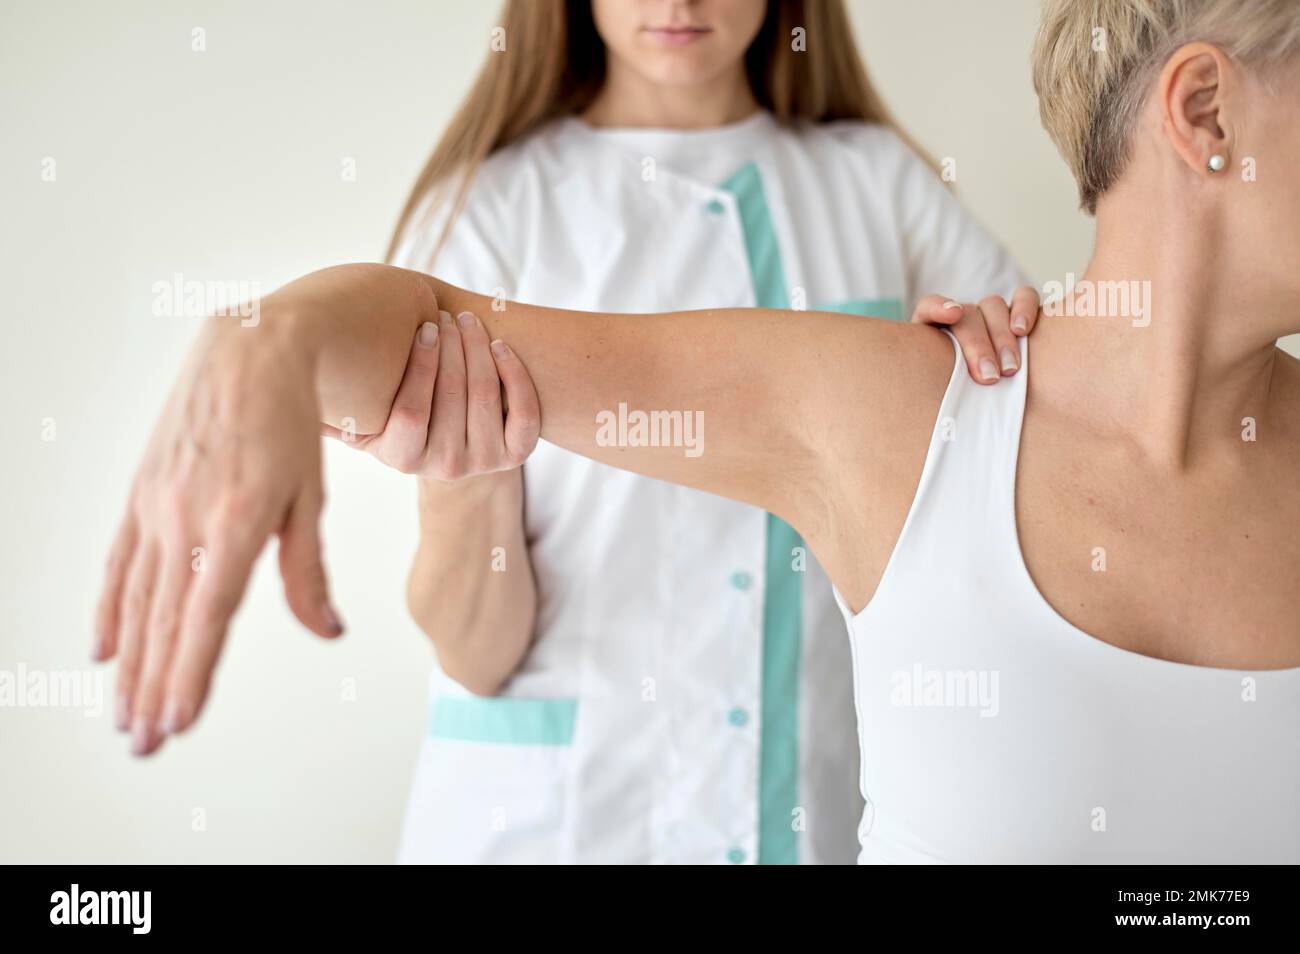 paciente femenina sometida a terapia física. Foto de alta resolución Foto de stock